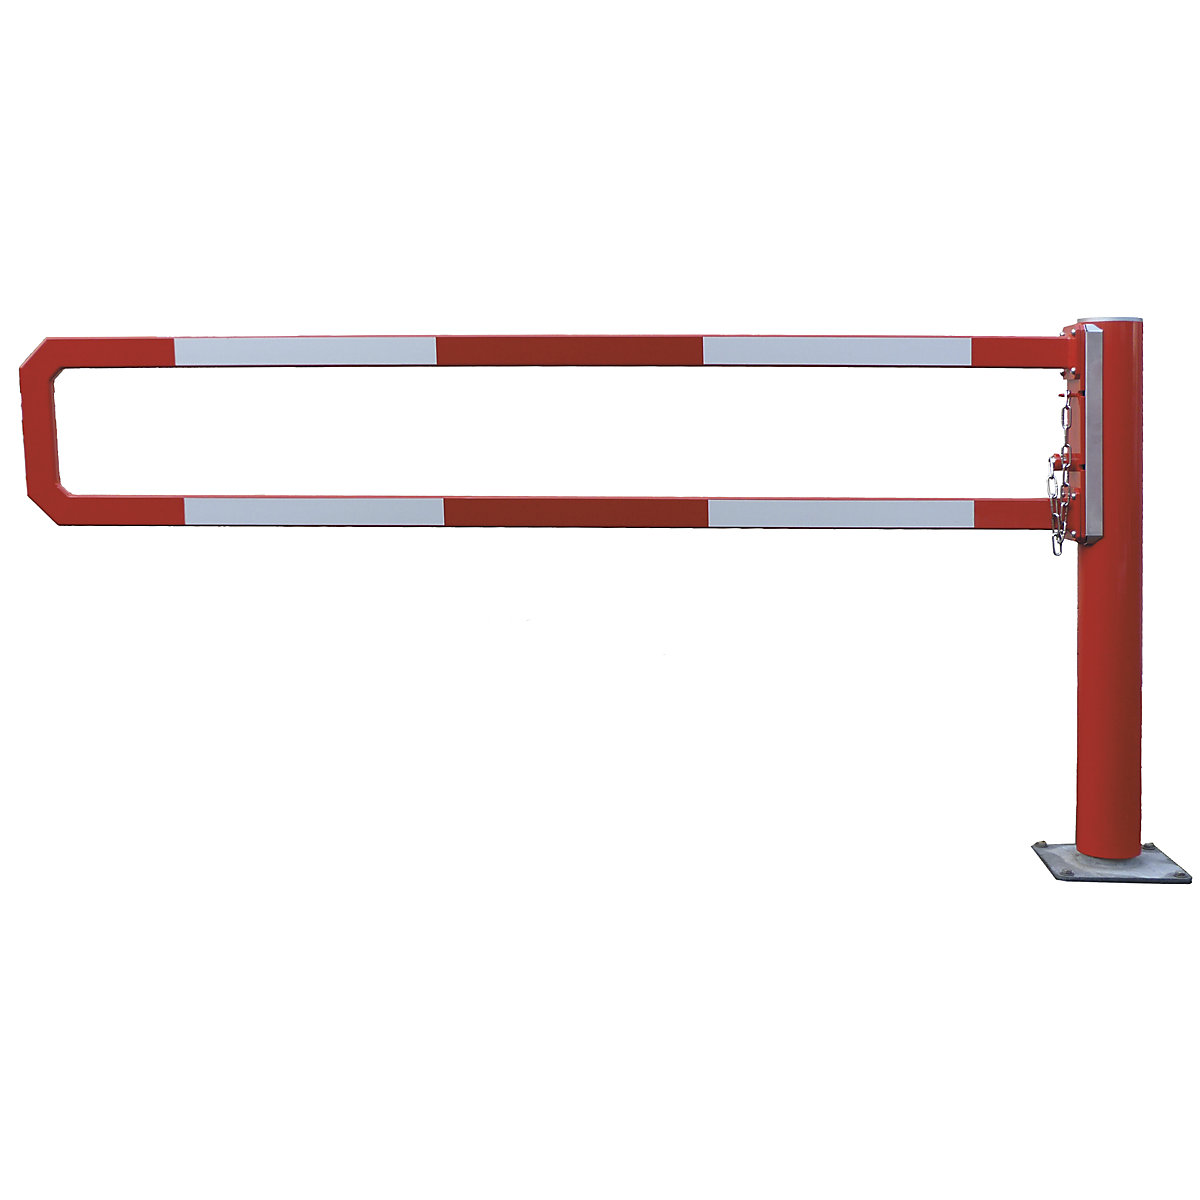 Cancela giratória – Mannus, diâmetro útil 2 m, galvanizado a fogo, adicion. pintado a pó a vermelho-2